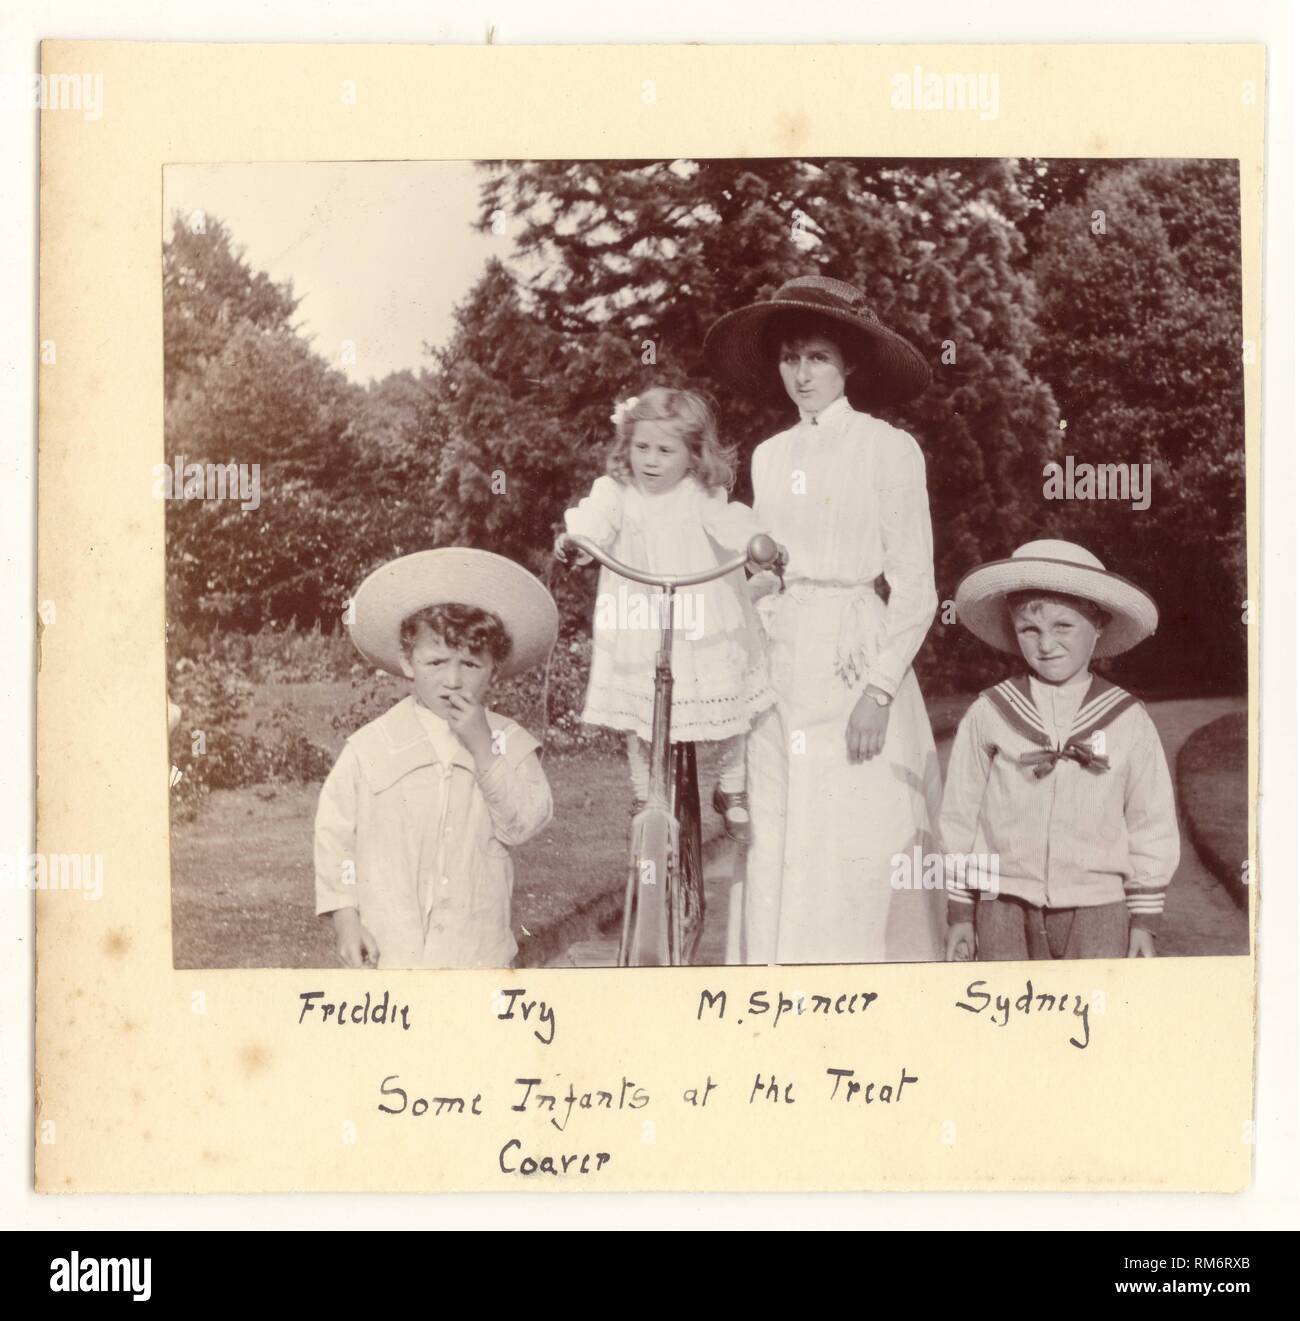 Edwardian photographie d'un mère attrayante dans un livre blanc de l'été de blouses et de jupes à marcher avec ses enfants dans le parc ou un jardin. Le plus jeune enfant est équilibré sur la mère, les garçons,vélo à la mode des costumes de marin et de chapeaux de paille, vers 1910, au Royaume-Uni. Banque D'Images